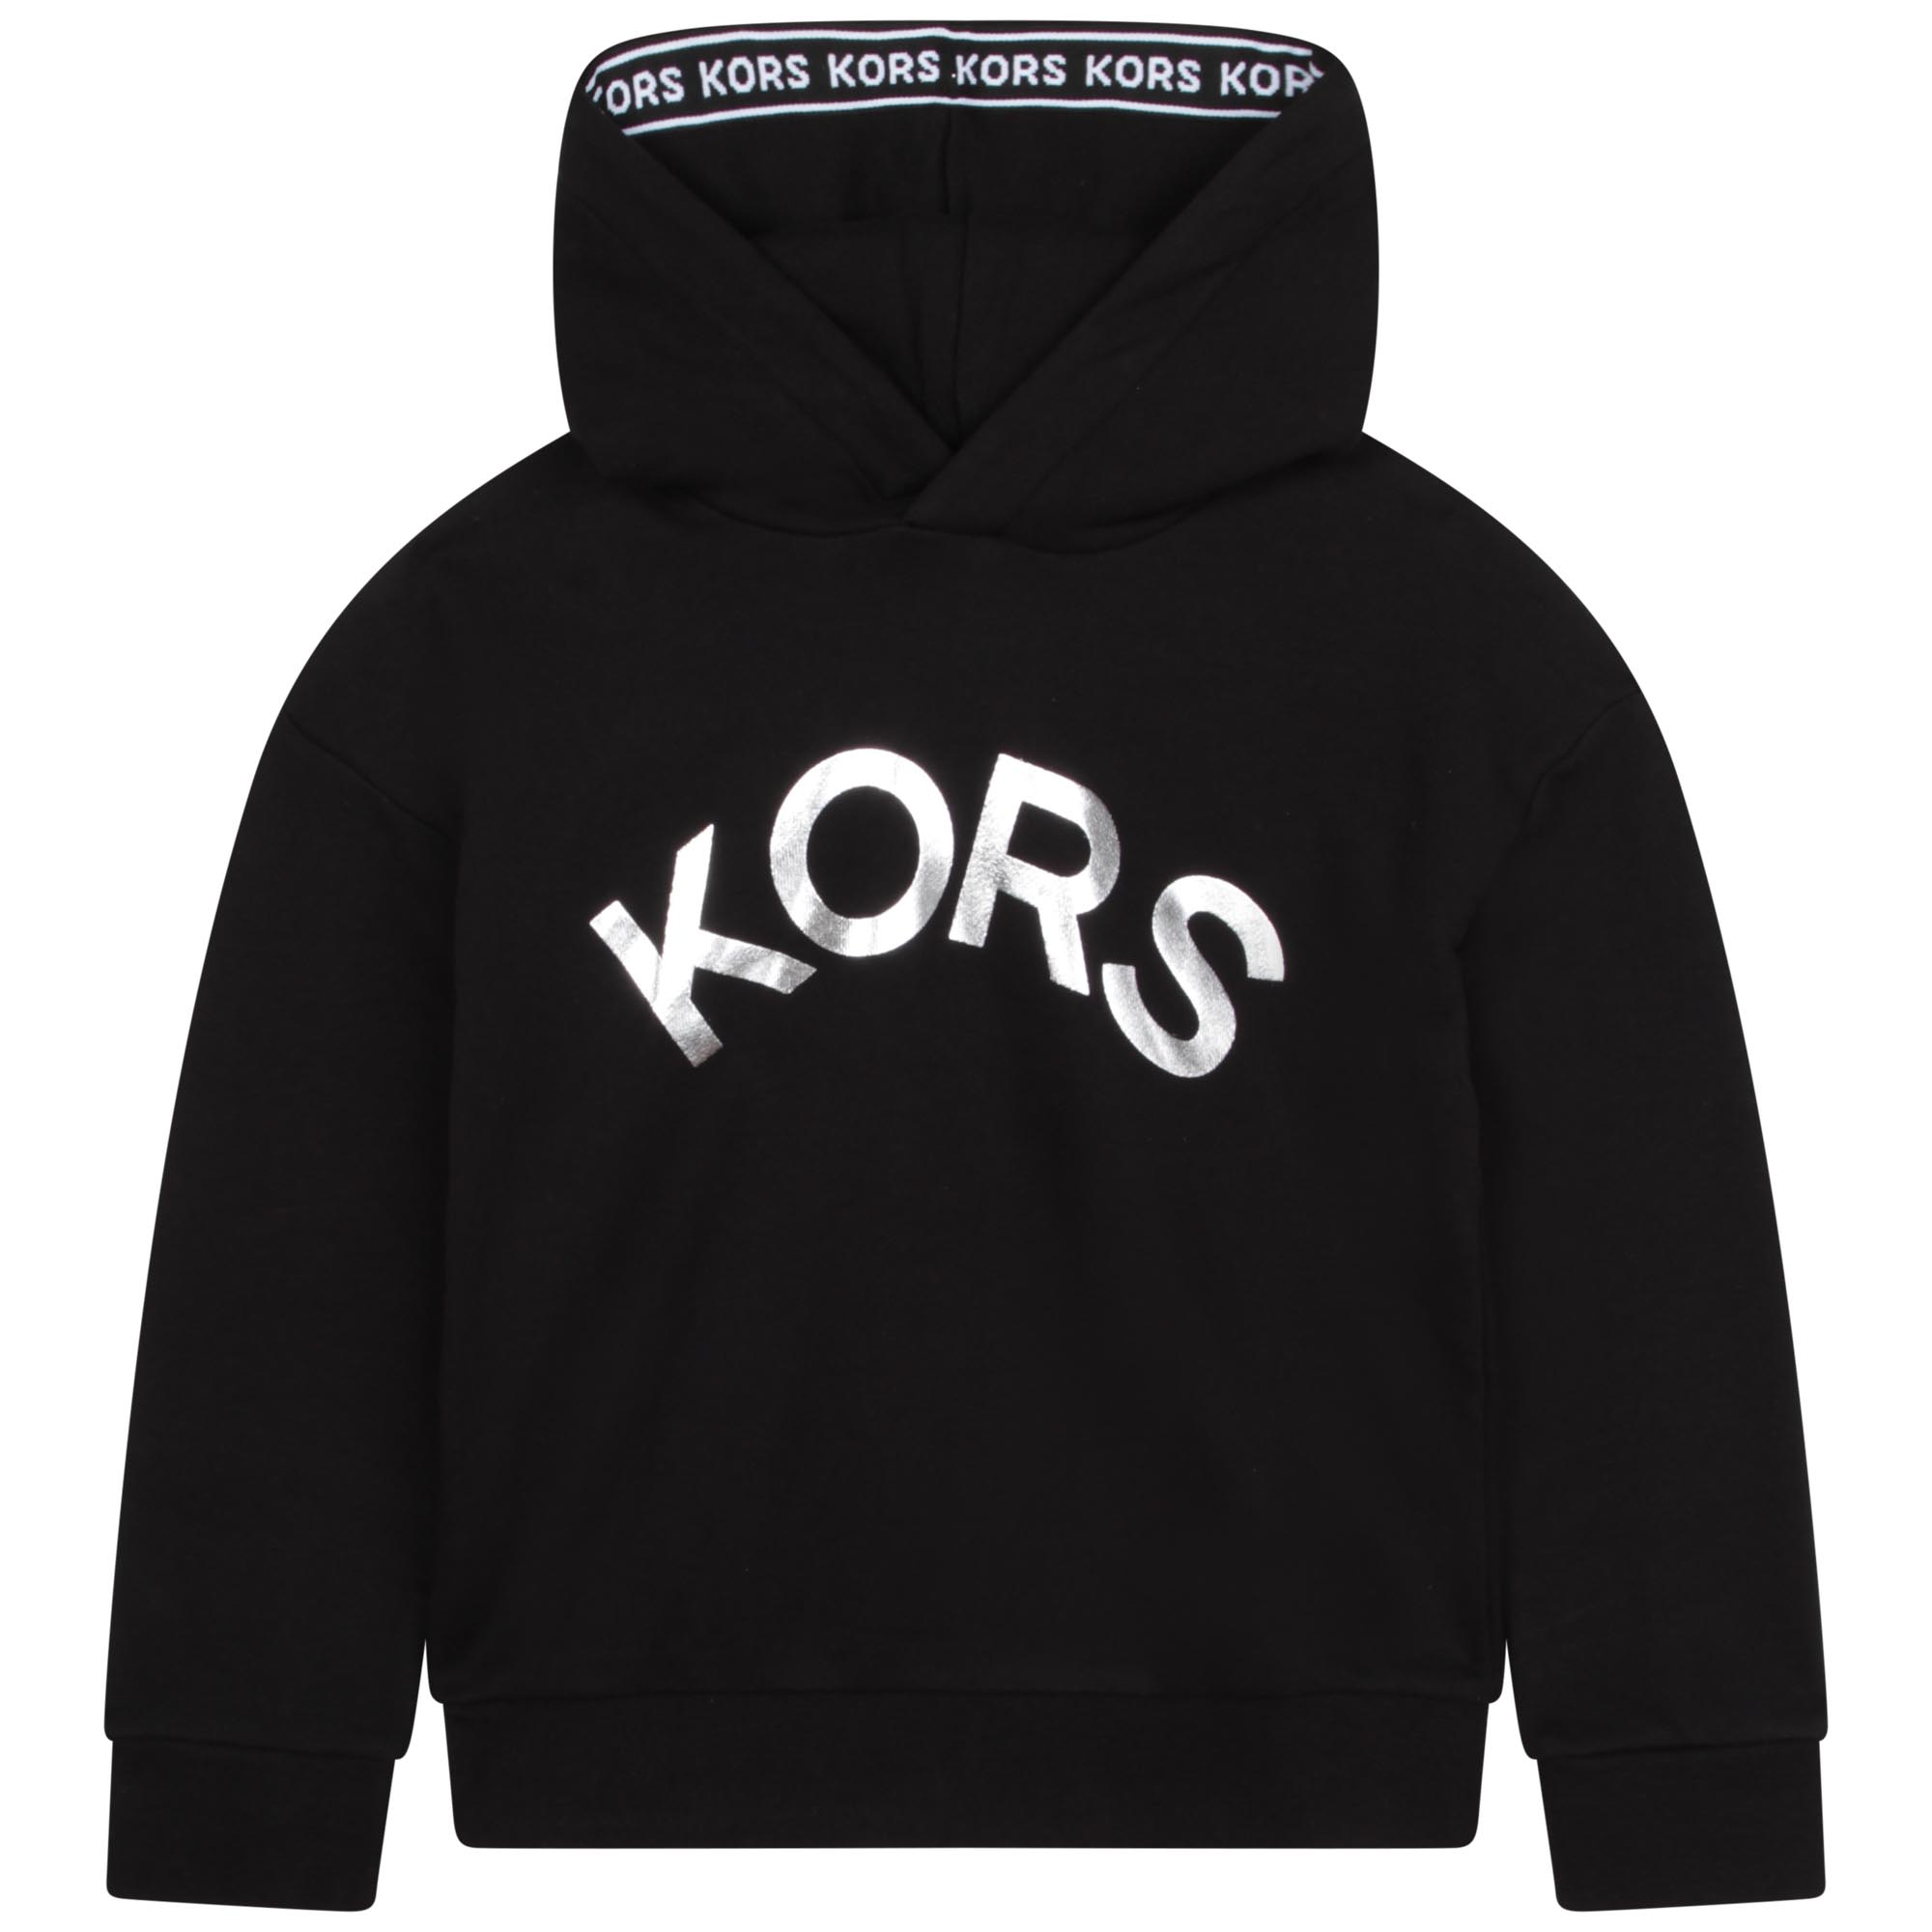 Hooded cotton sweatshirt MICHAEL KORS for GIRL